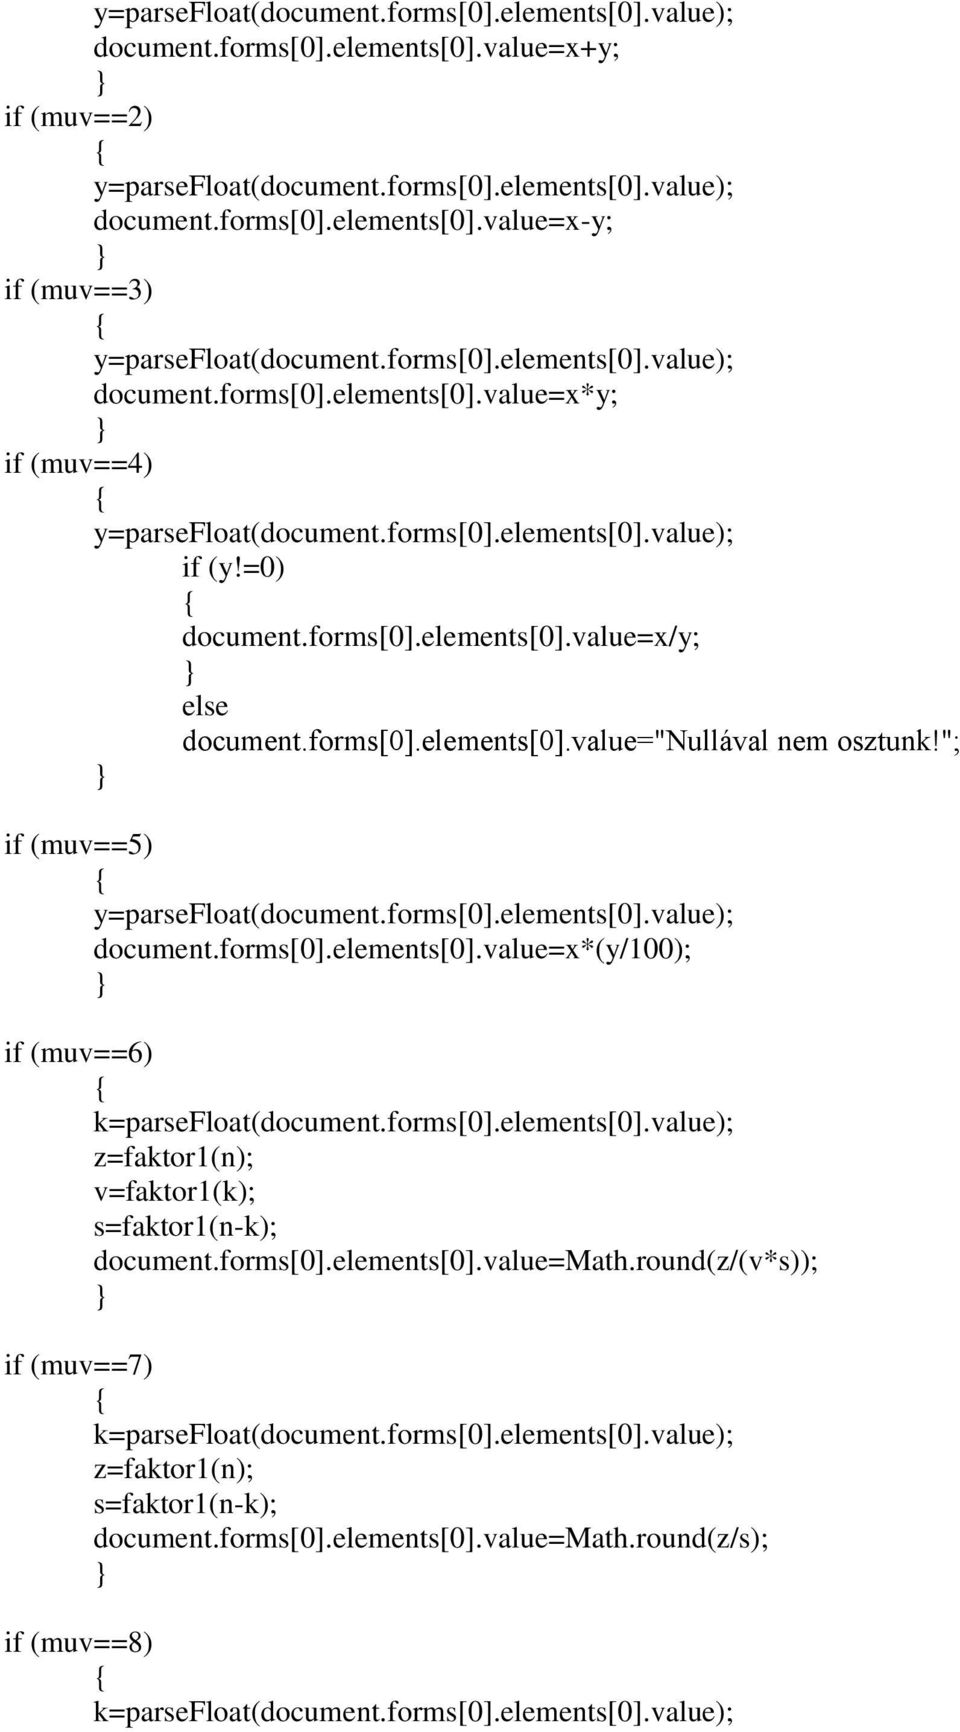 forms[0].elements[0].value); z=faktor1(n); v=faktor1(k); s=faktor1(n-k); document.forms[0].elements[0].value=math.round(z/(v*s)); if (muv==7) k=parsefloat(document.forms[0].elements[0].value); z=faktor1(n); s=faktor1(n-k); document.